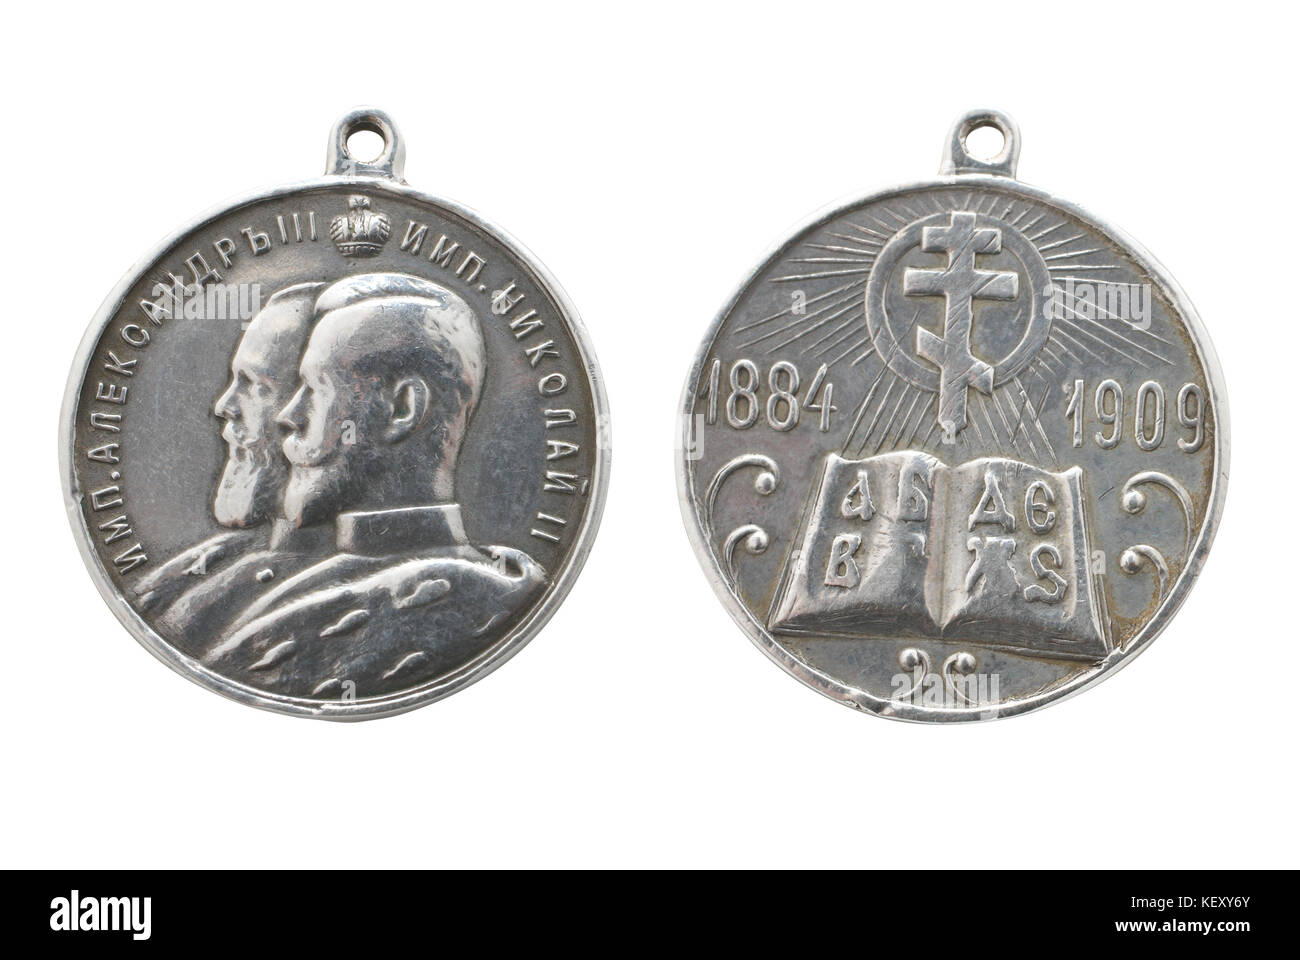 Medalla en memoria del 25 aniversario de la escuela parroquial en el imperio ruso. (Creado en 1909). Ruta de plata sobre fondo blanco. Foto de stock